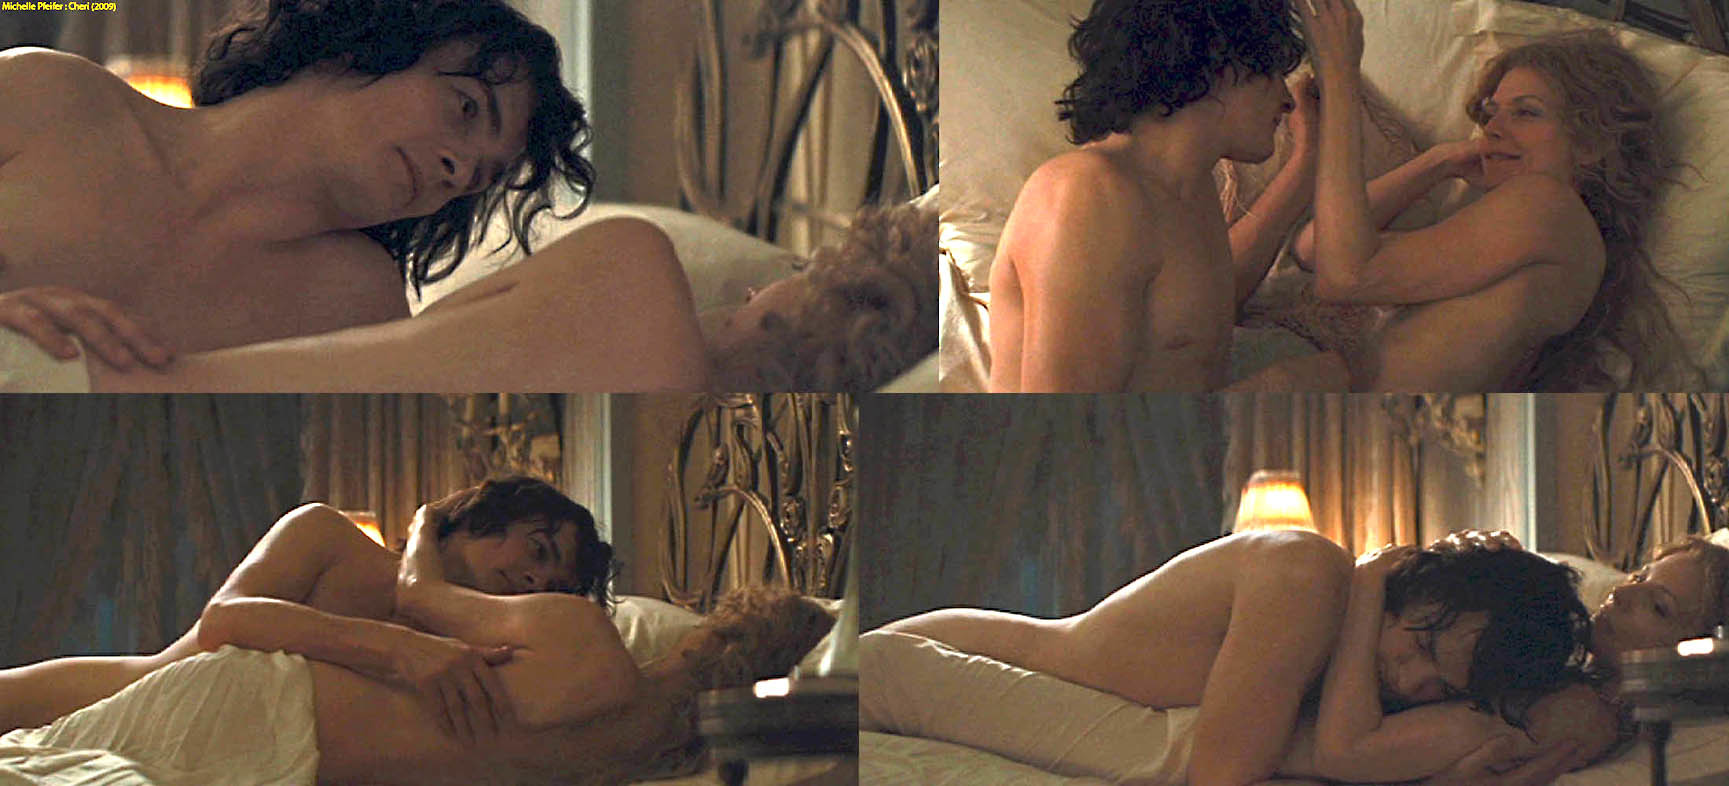 Michelle pfeiffer naked